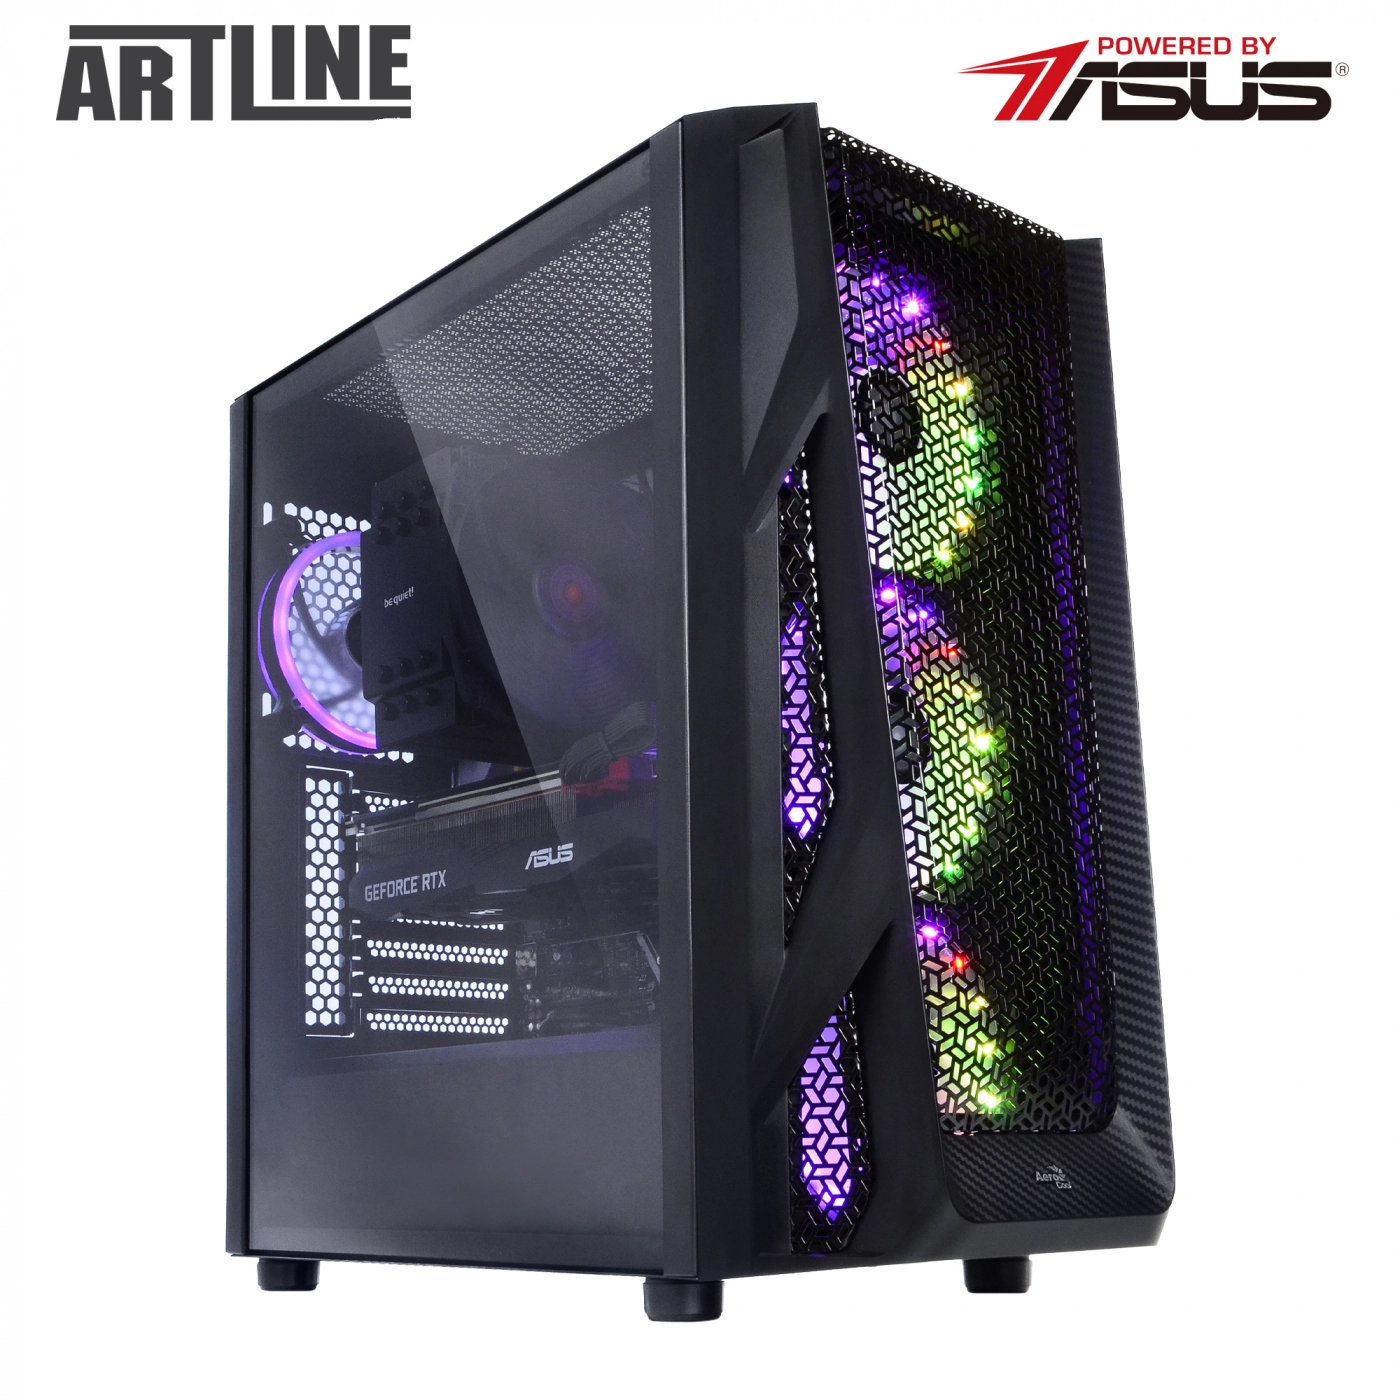 Купить Компьютер ARTLINE Gaming X93v30 - фото 3